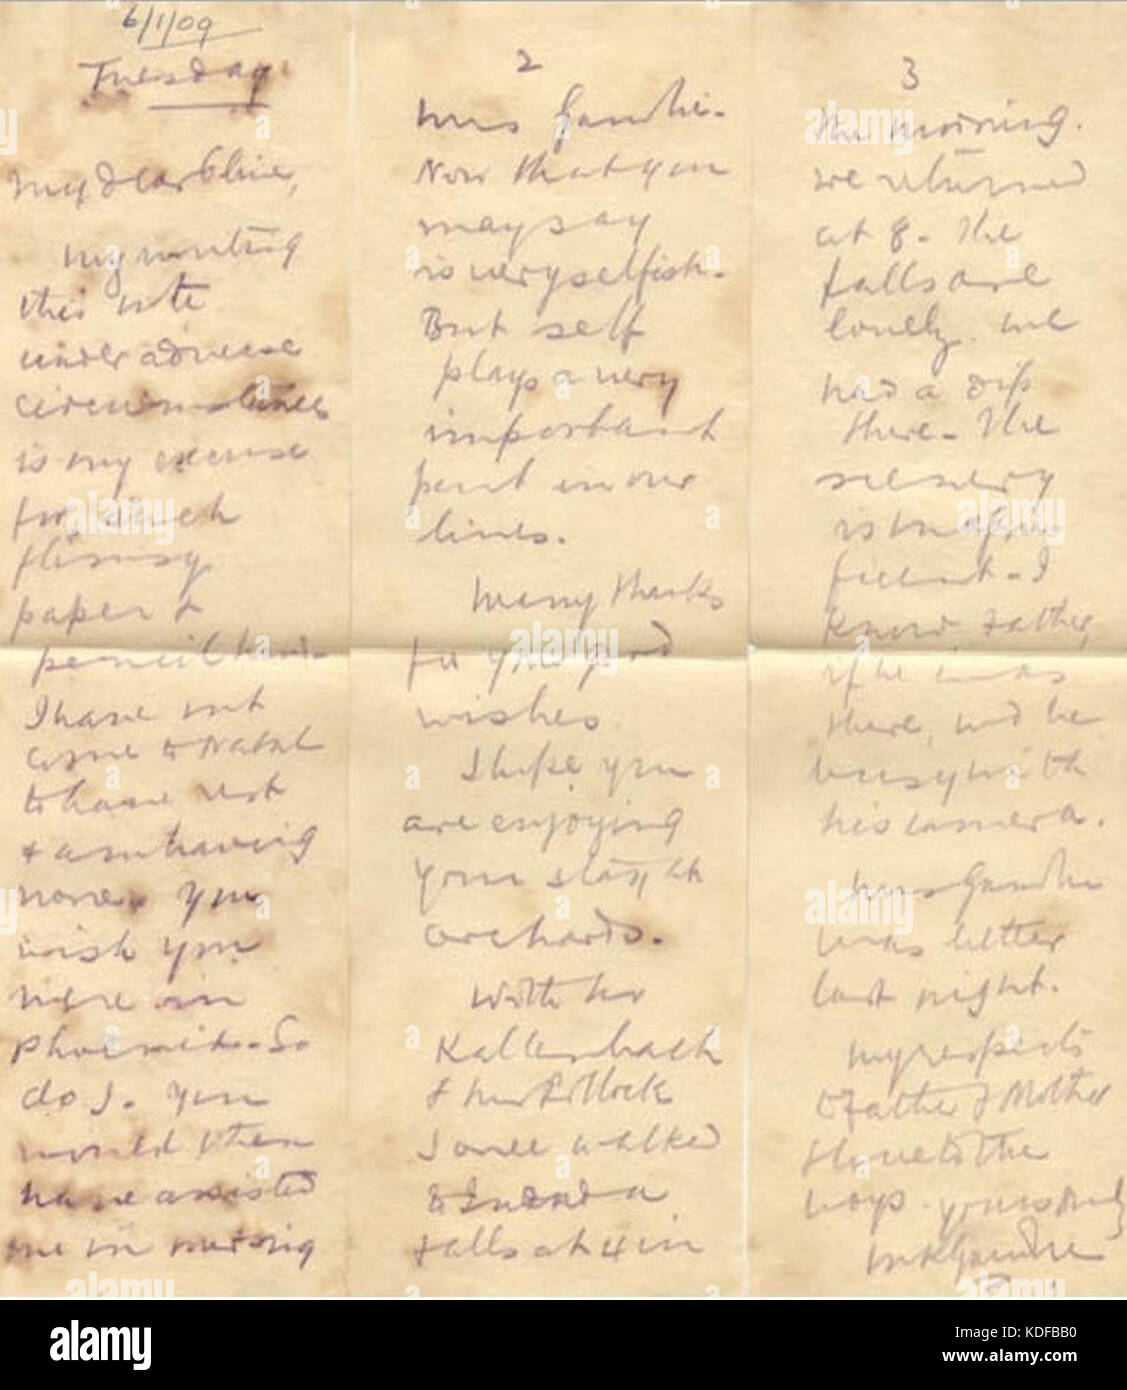 Carta MKGandhi en lápiz indeleble el 6 de enero de 1909 Sudáfrica Foto de stock